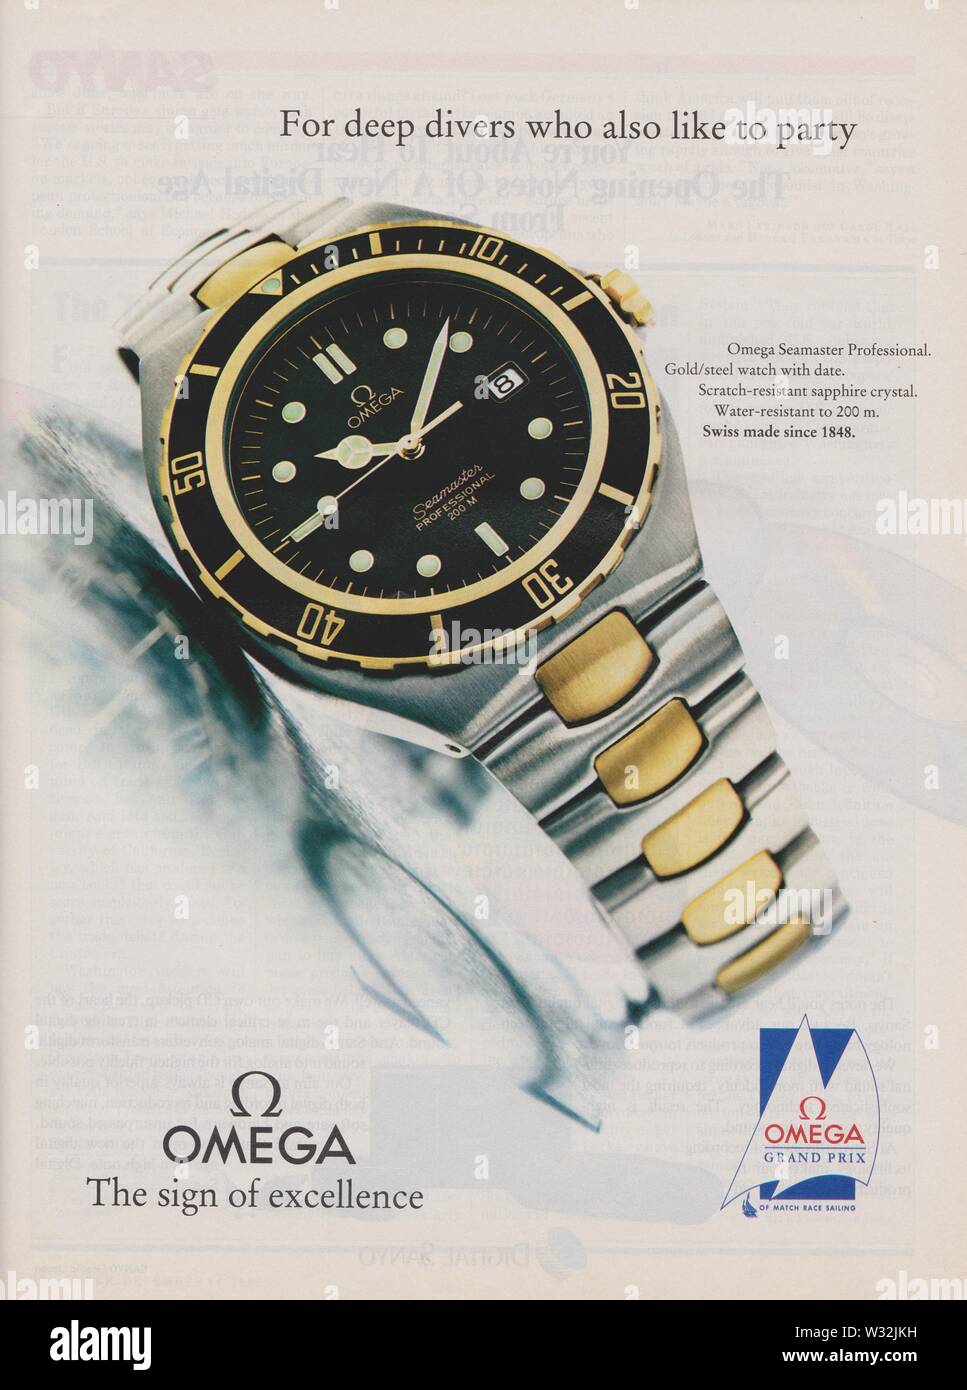 Plakat werbung OMEGA Seamaster Uhr im Magazin von 1992 Jahr, das Zeichen  der Exzellenz Slogan, Werbung, kreative OMEGA Anzeige von 1990 s  Stockfotografie - Alamy